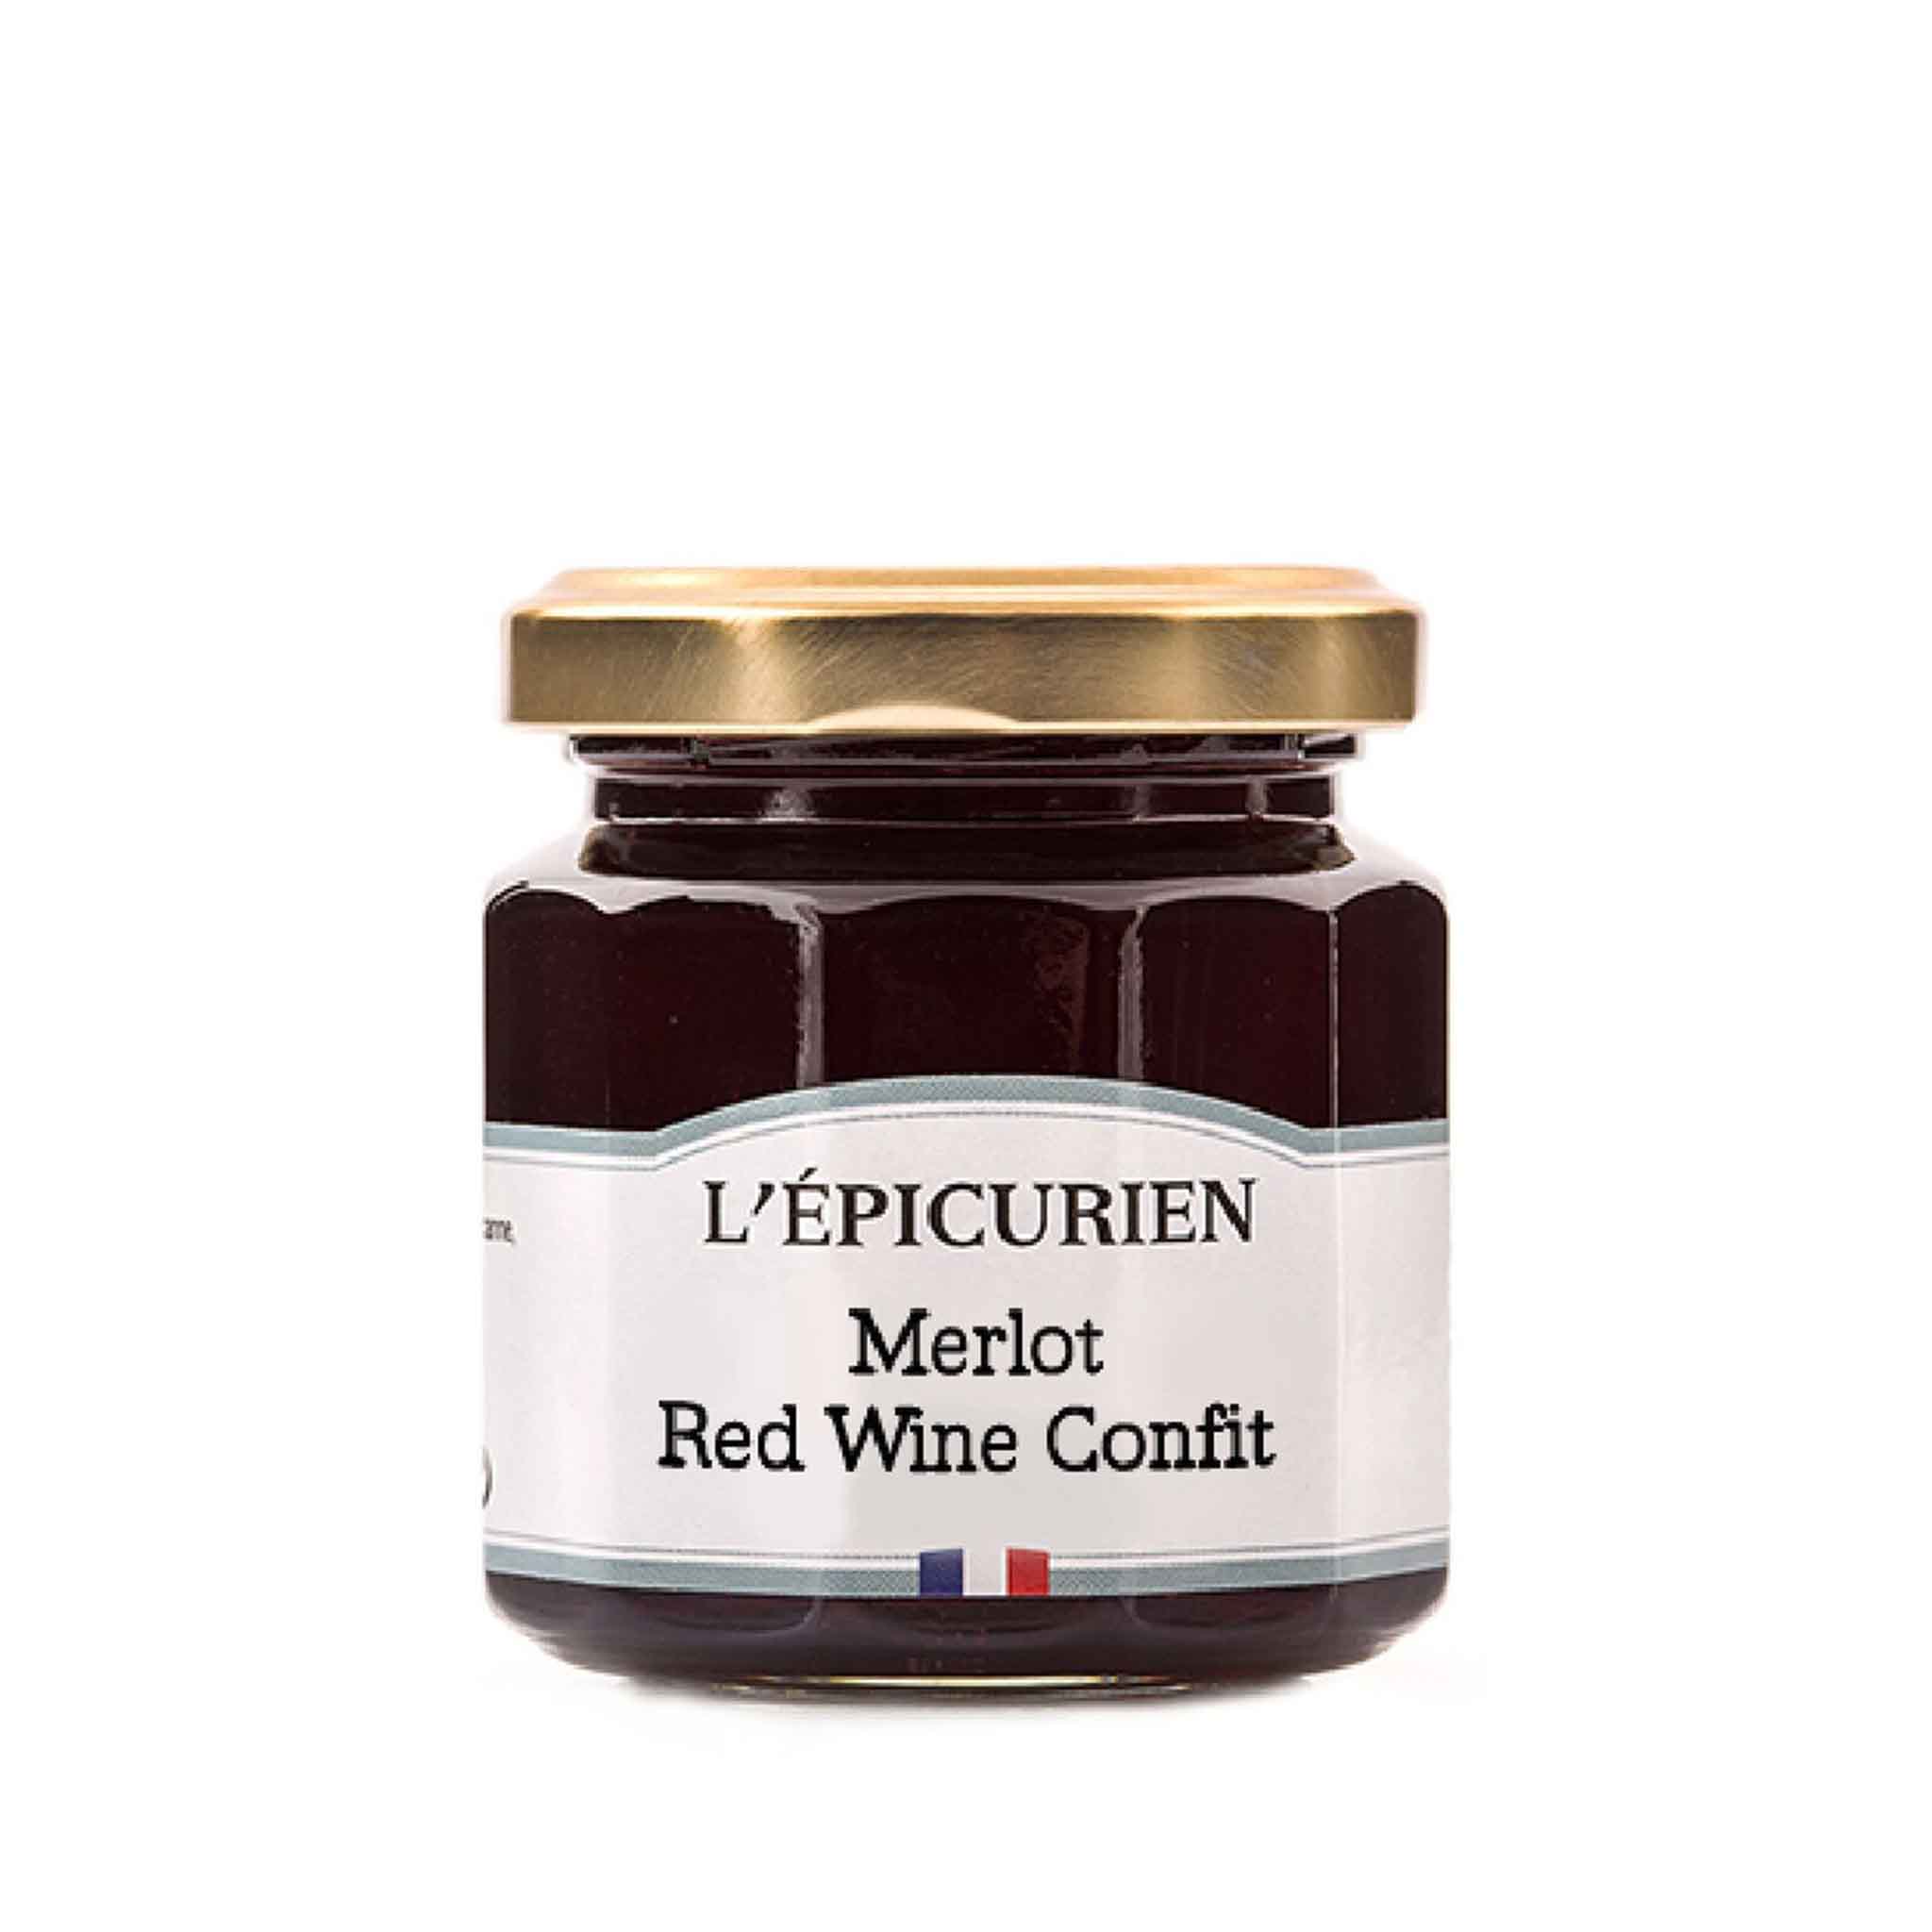 L'EPICURIEN MERLOT RED WINE CONFIT 125g